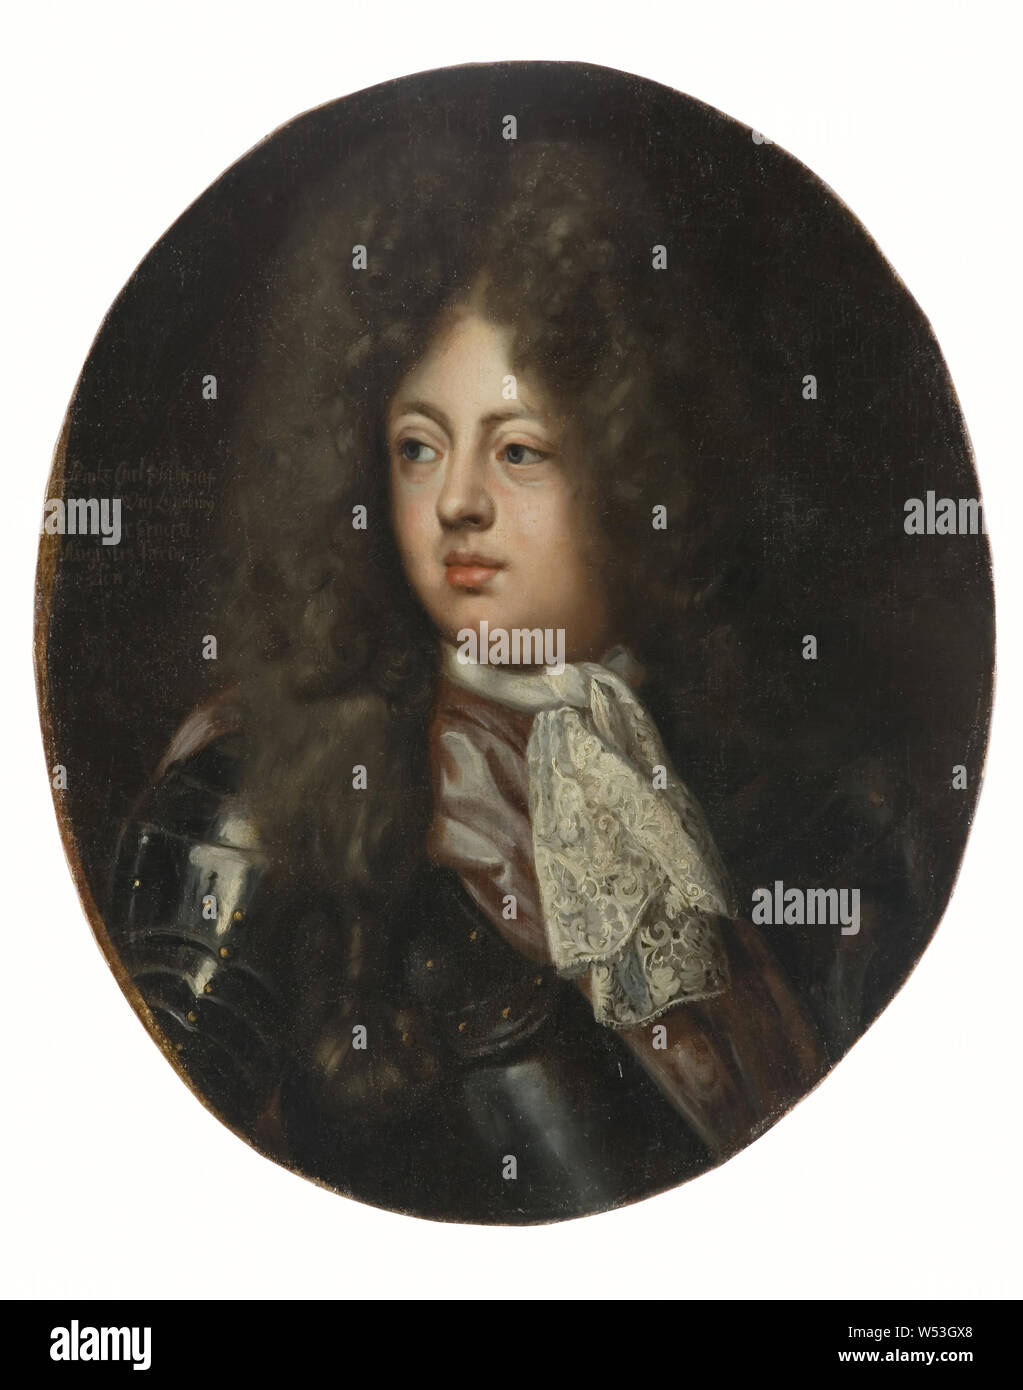 David von Krafft, Karl Filip, 1669-1690, Prinz von Braunschweig-Lüneburg, Malerei, Öl auf Leinwand, Höhe, 69,5 cm (27,3 Zoll), Breite 57 cm (22,4 Zoll) Stockfoto